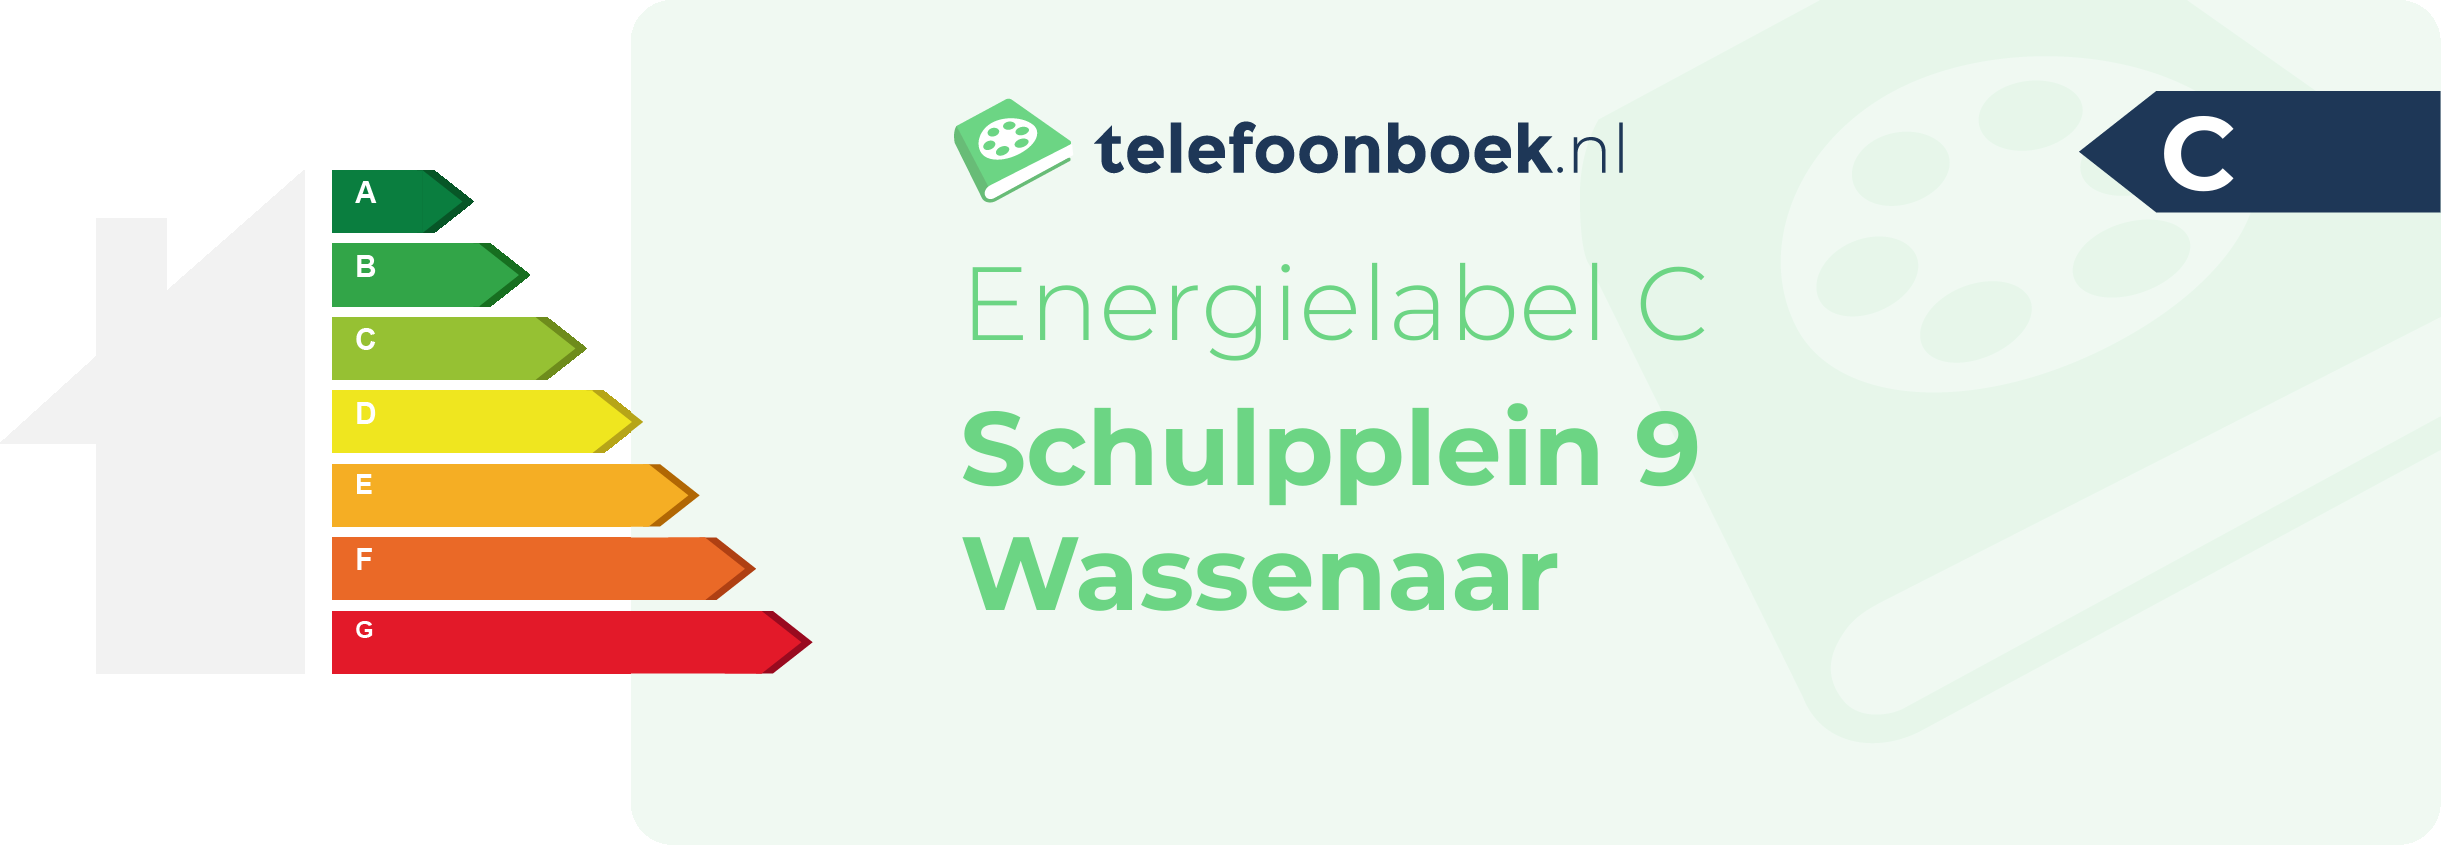 Energielabel Schulpplein 9 Wassenaar